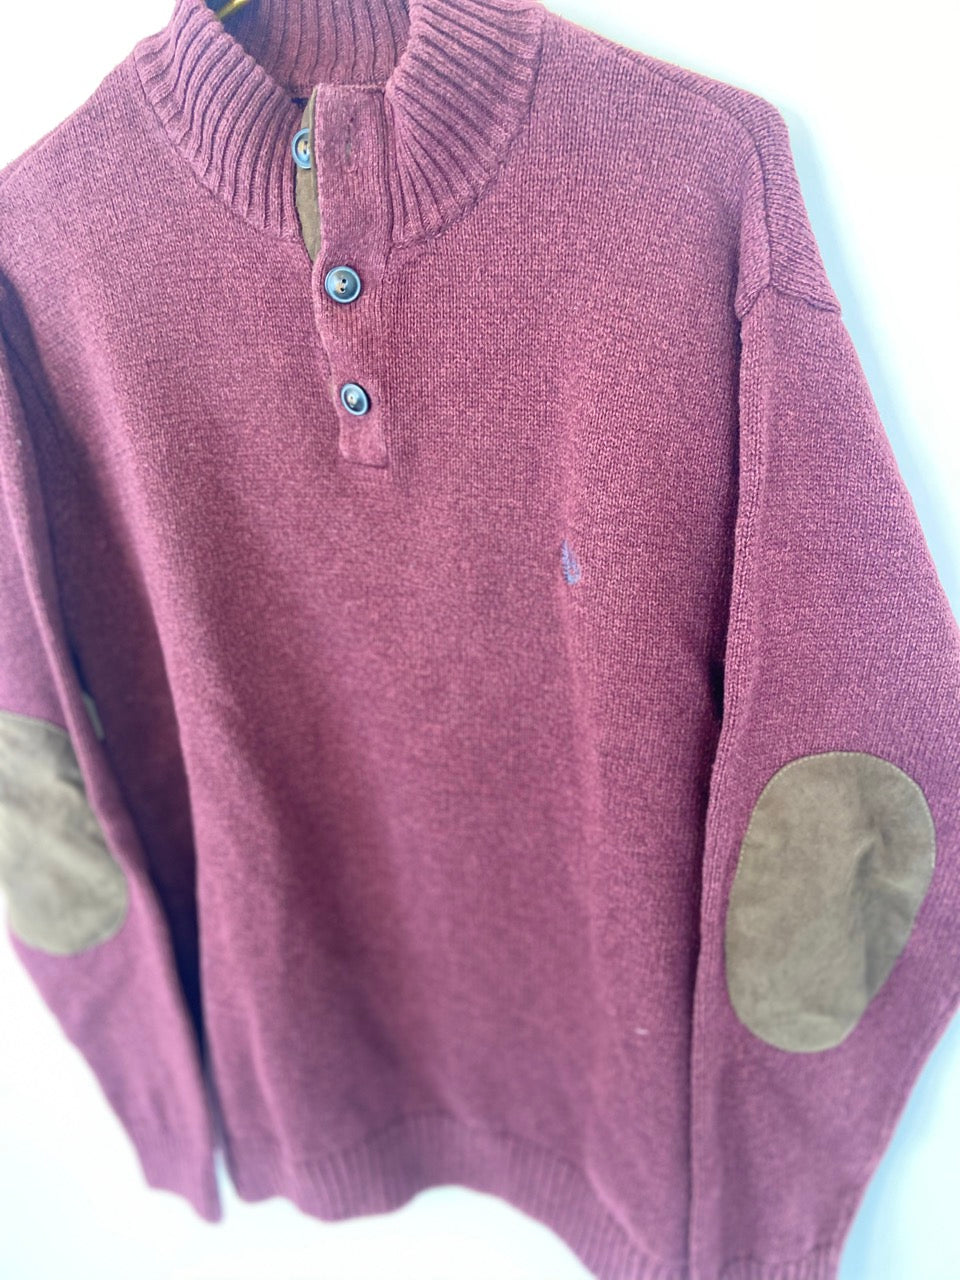 Burgundy Elbow Patch Sweater- XXL